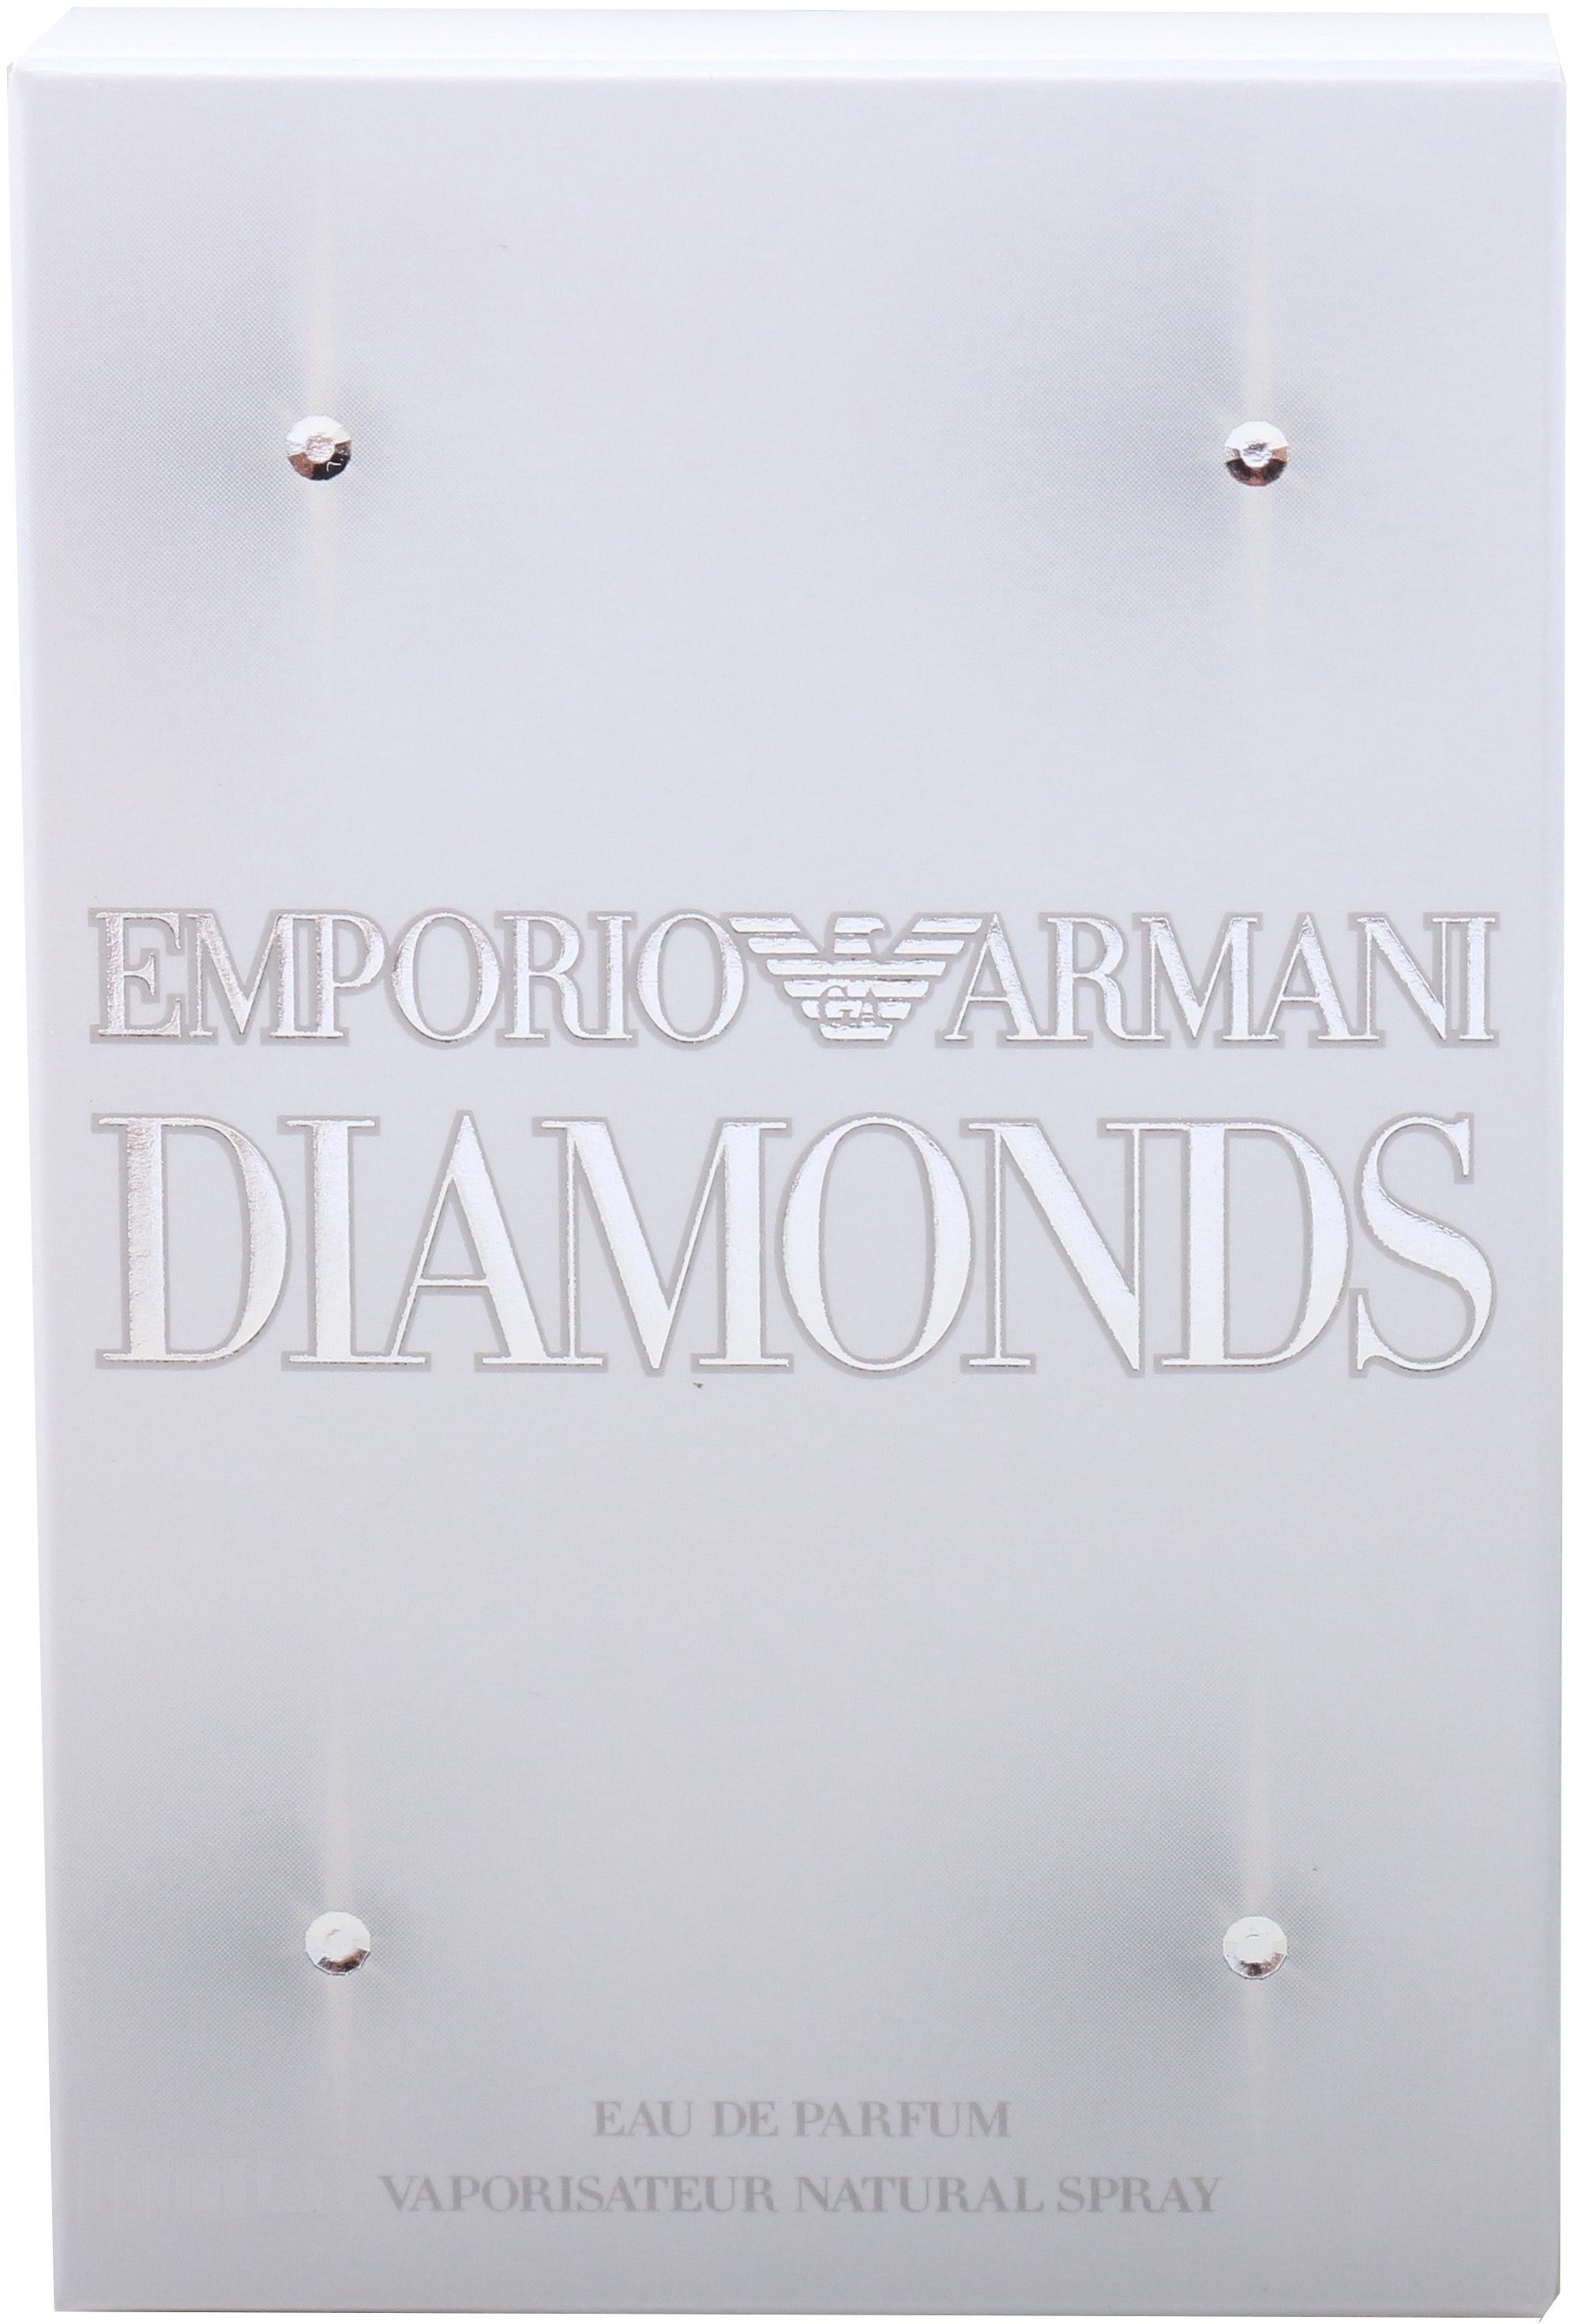 Diamonds Parfum Armani Eau de Giorgio